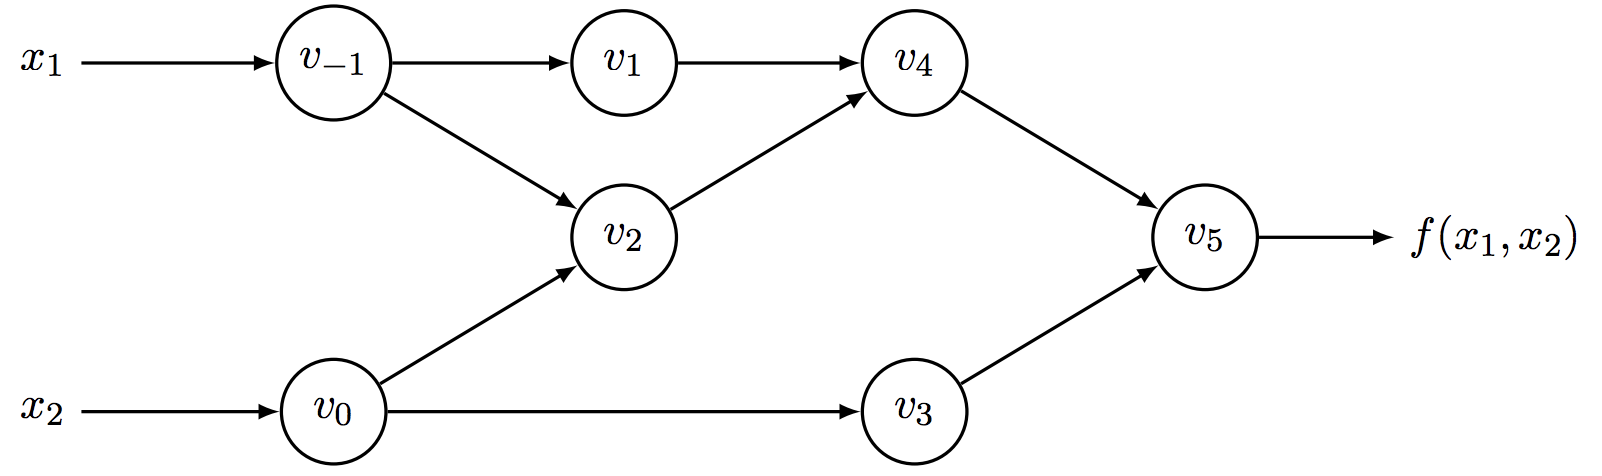 计算序列的计算图形式表示